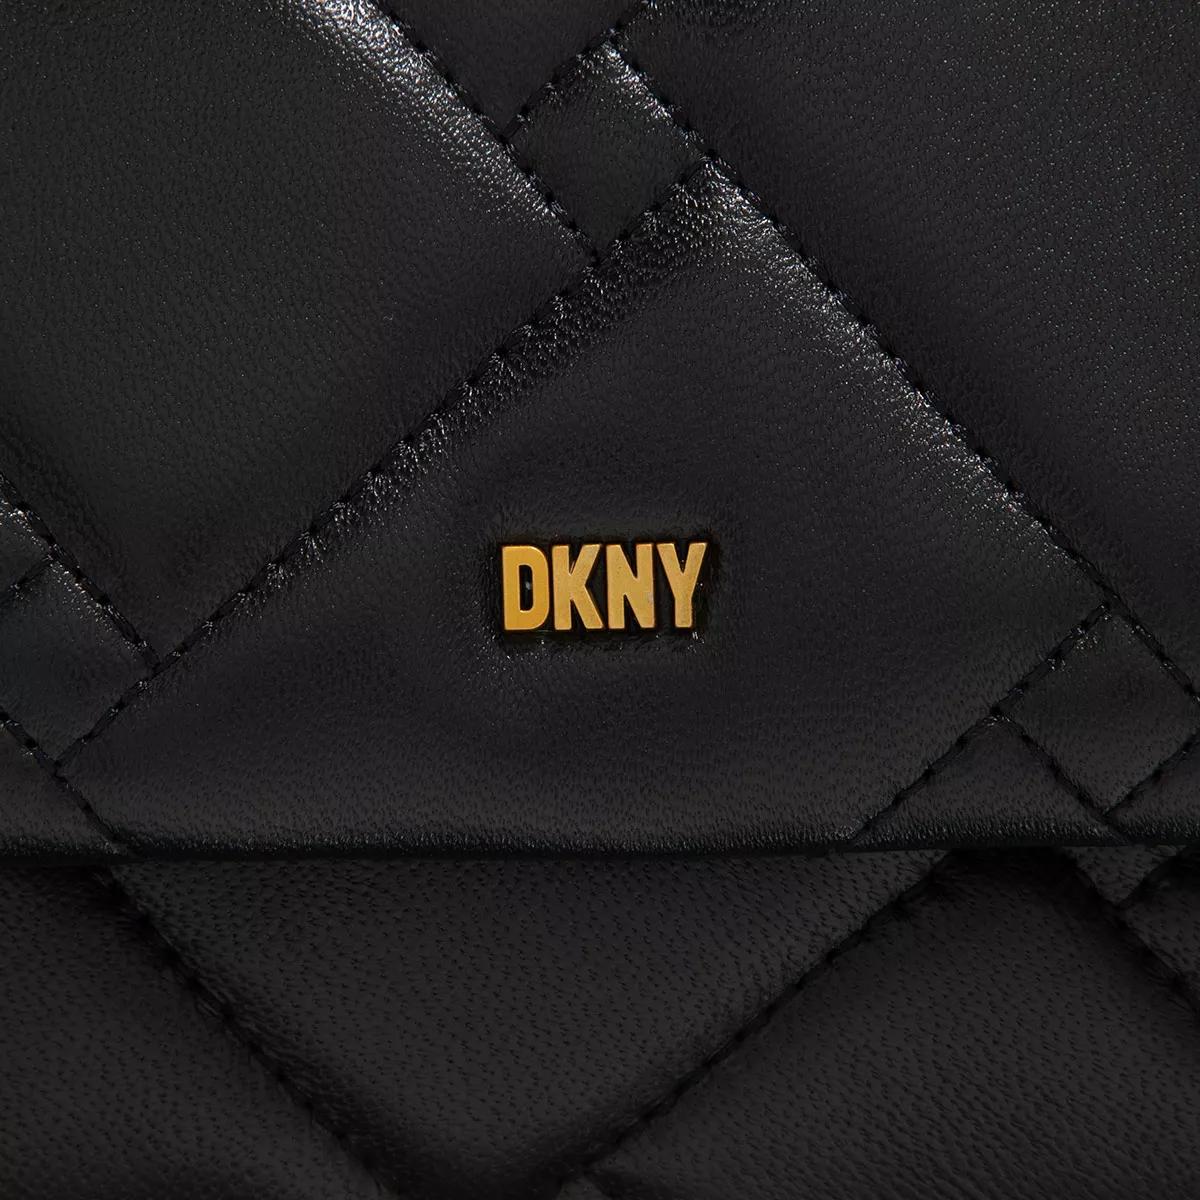 DKNY, DKNY Willow Shd Ld24, Black/Gold